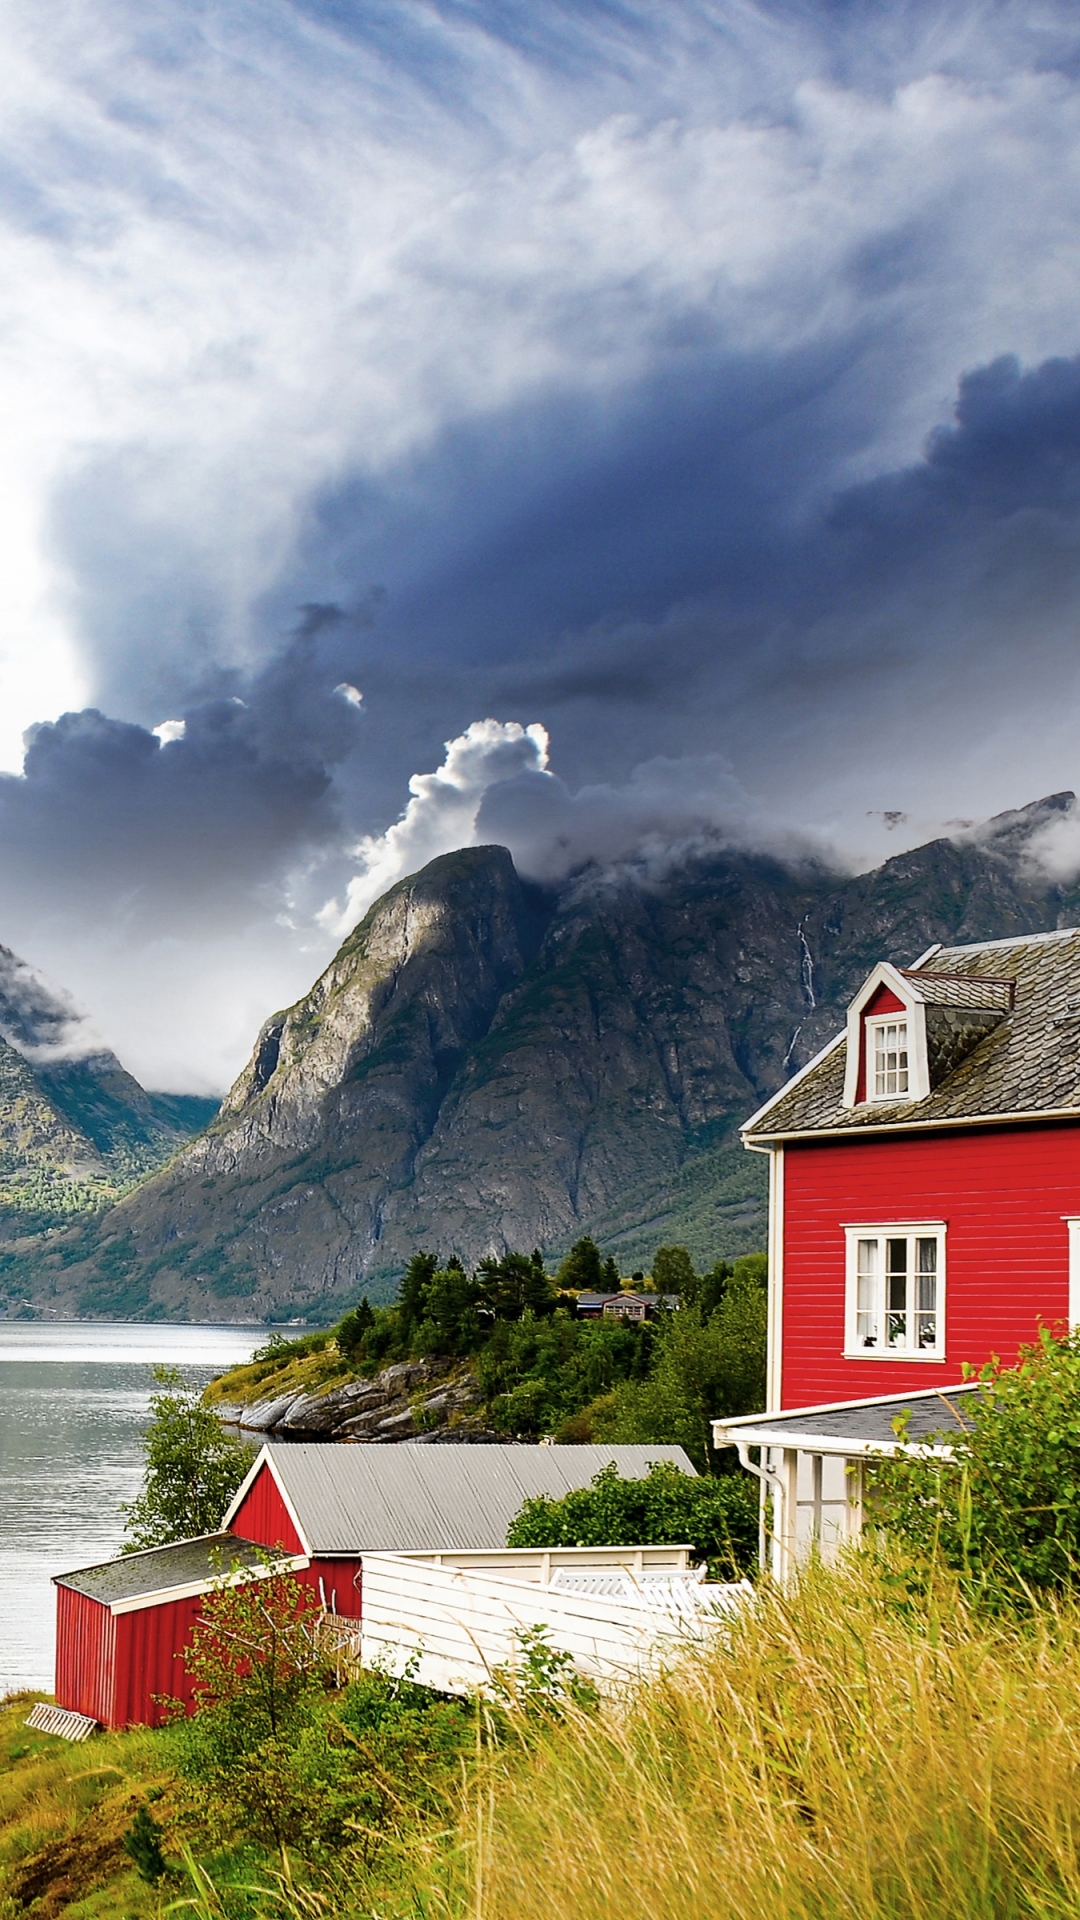 Скачать картинку Пейзаж, Норвегия, Фотографии в телефон бесплатно.